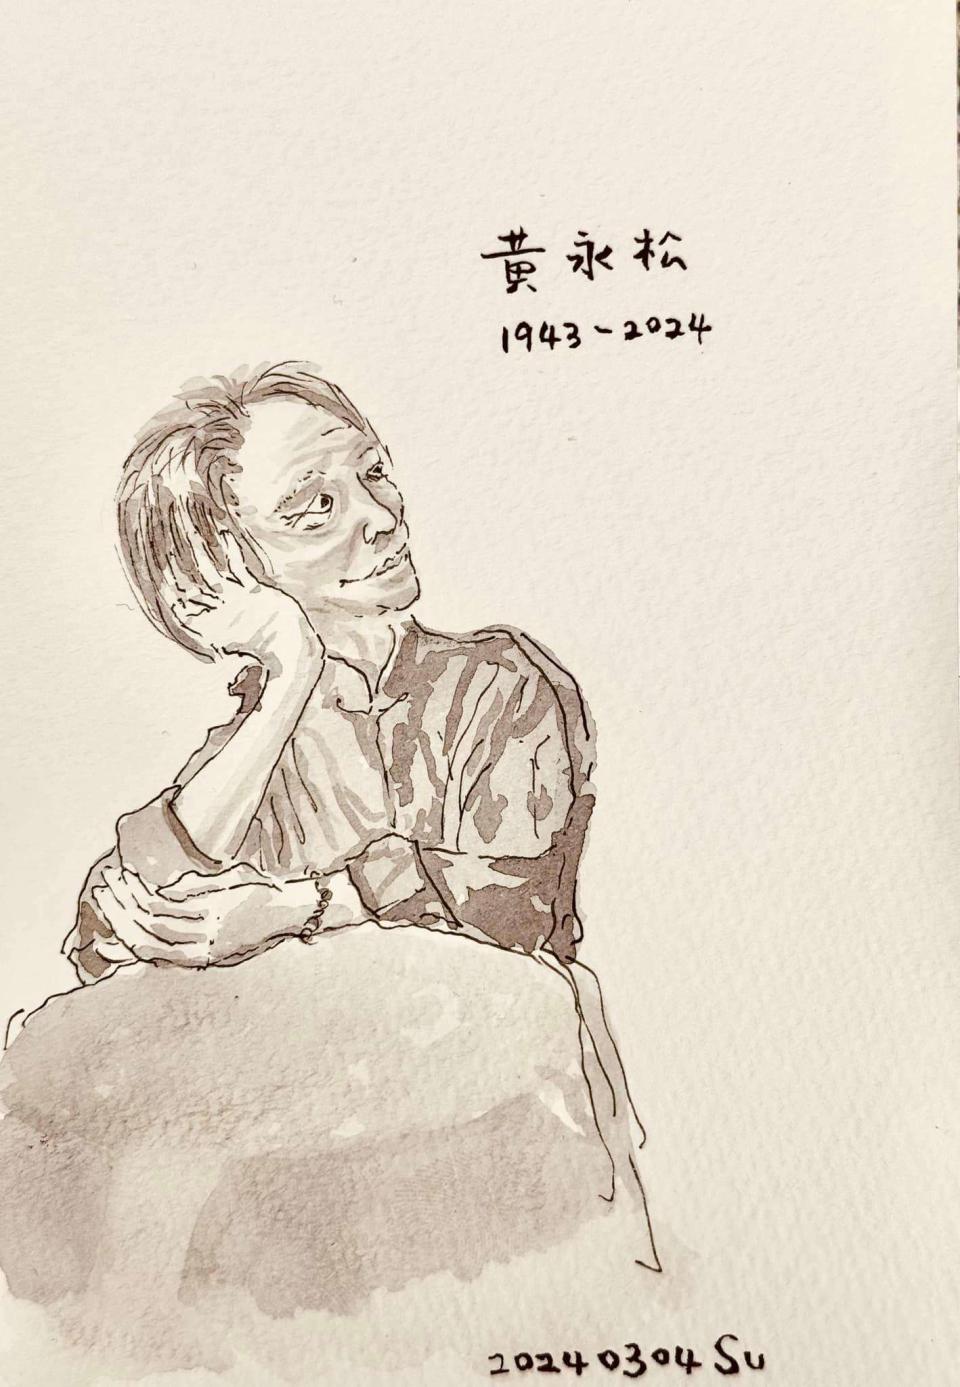 蘇俊賓親筆手繪黃永松畫像，感性追憶「漢聲」對他一生的影響，是人生的第一個科普。